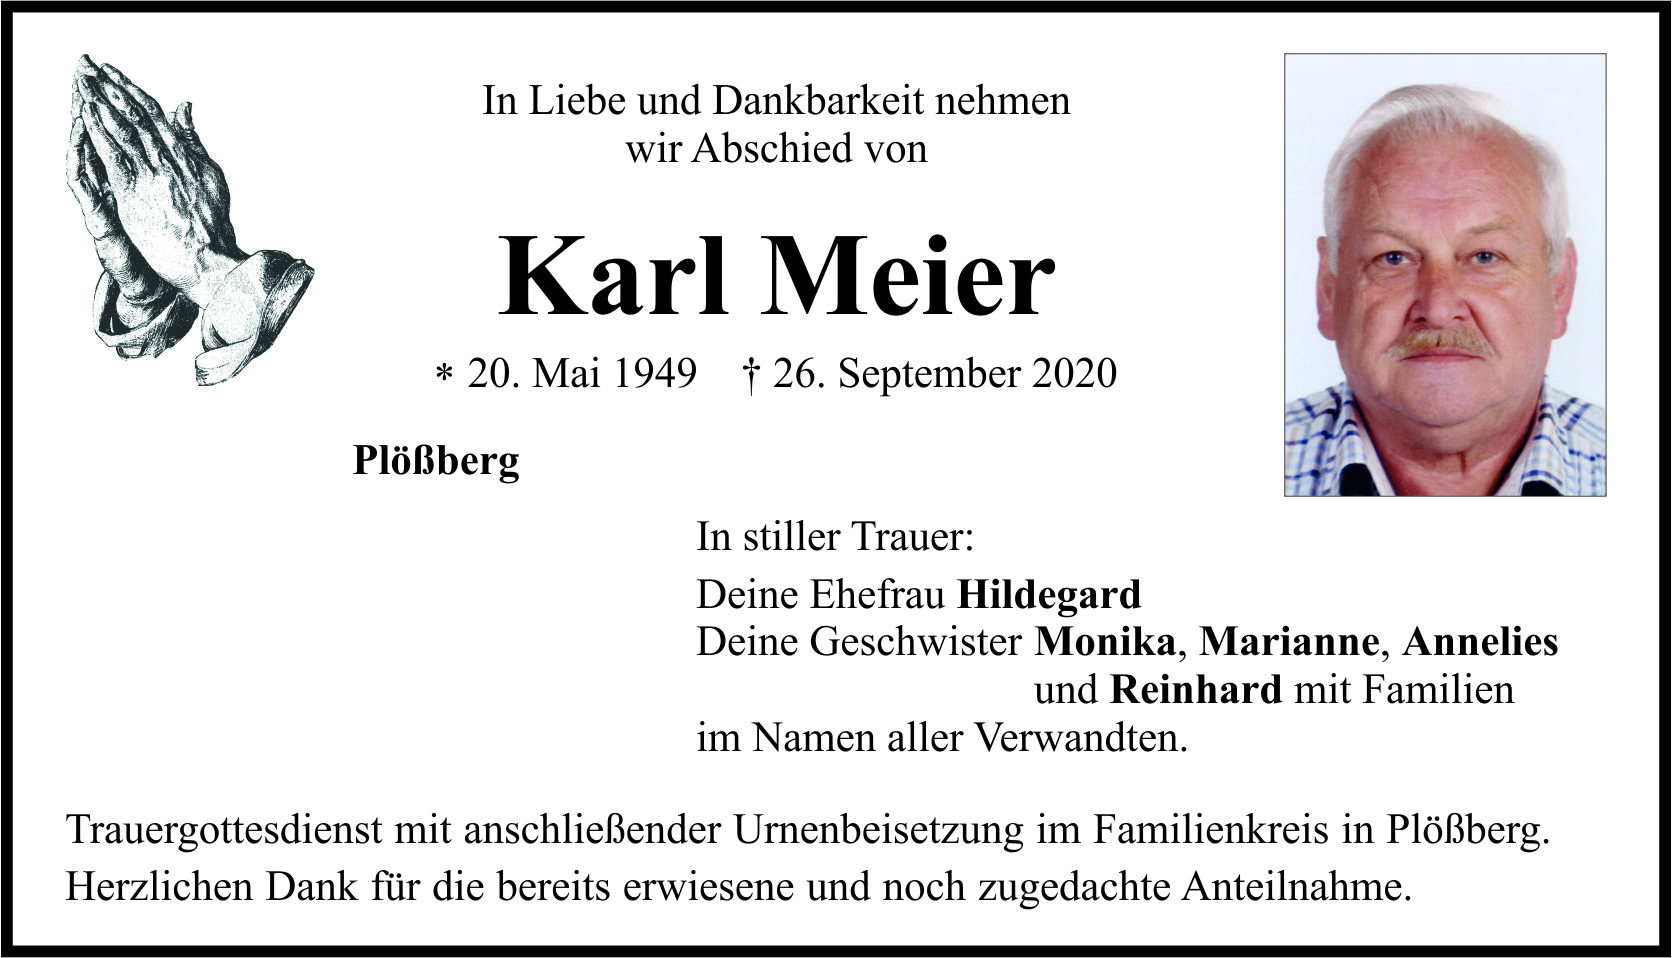 Traueranzeige Karl Meier, Plößberg